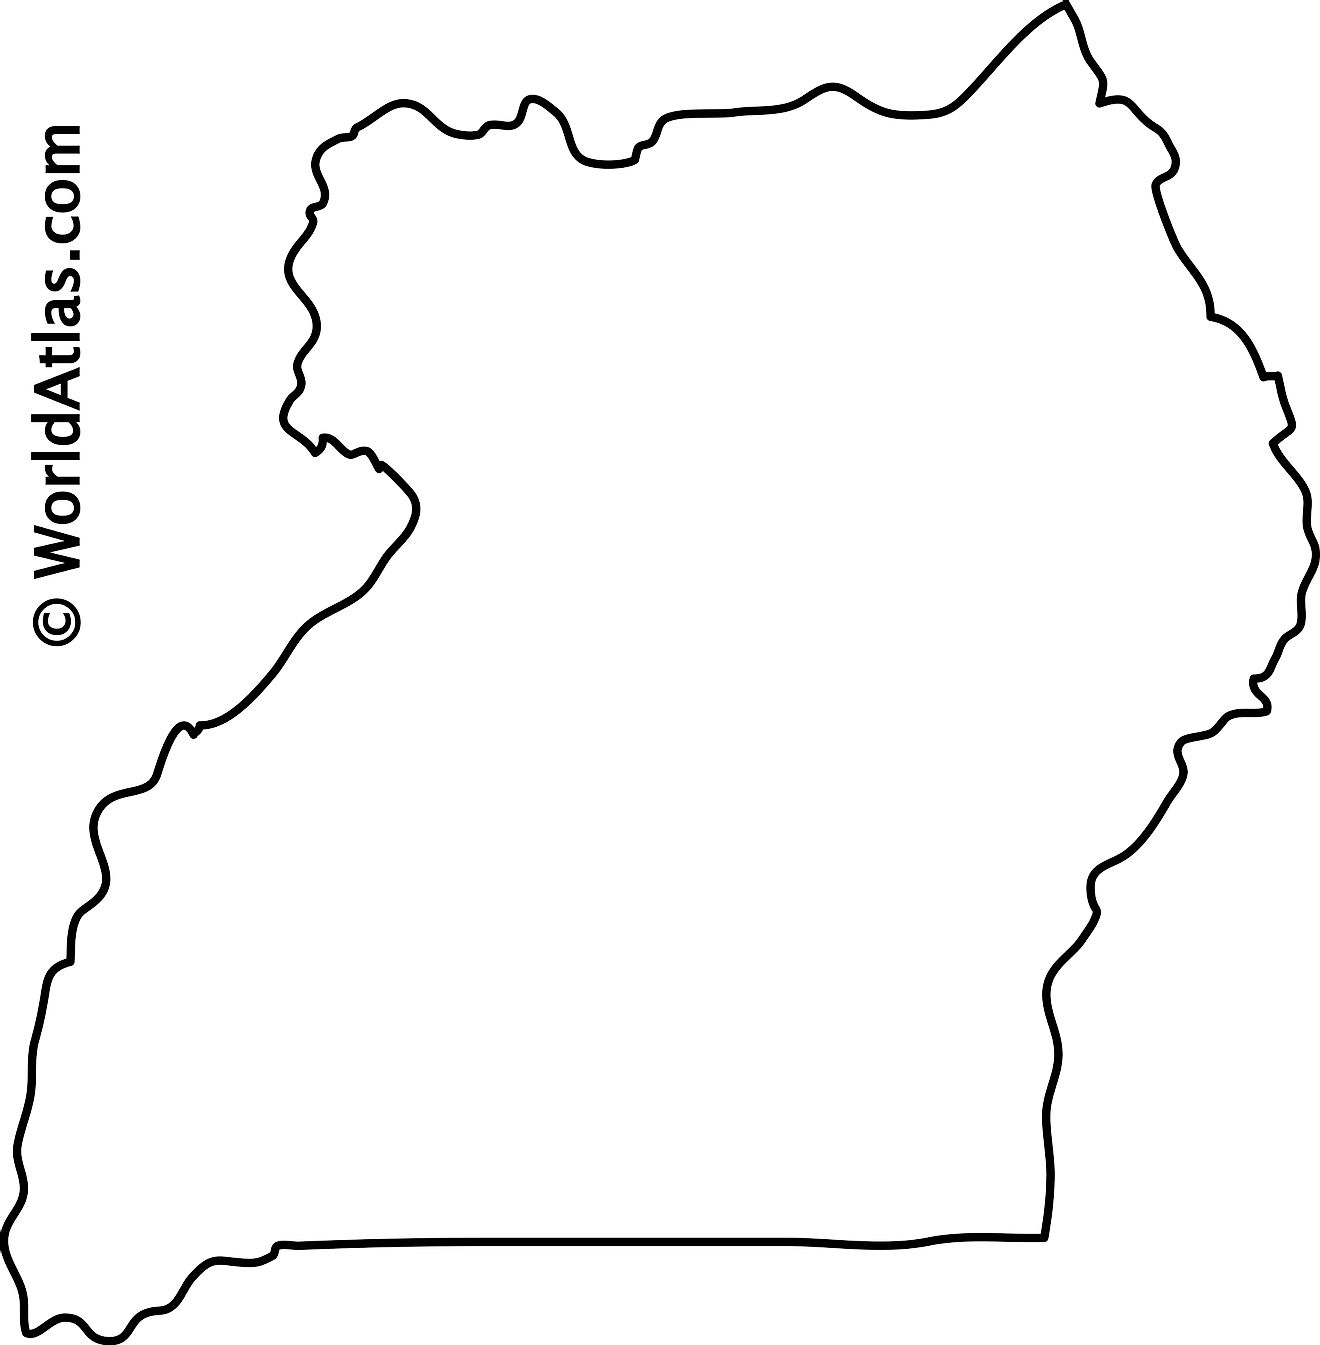 Mapa de contorno en blanco de Uganda